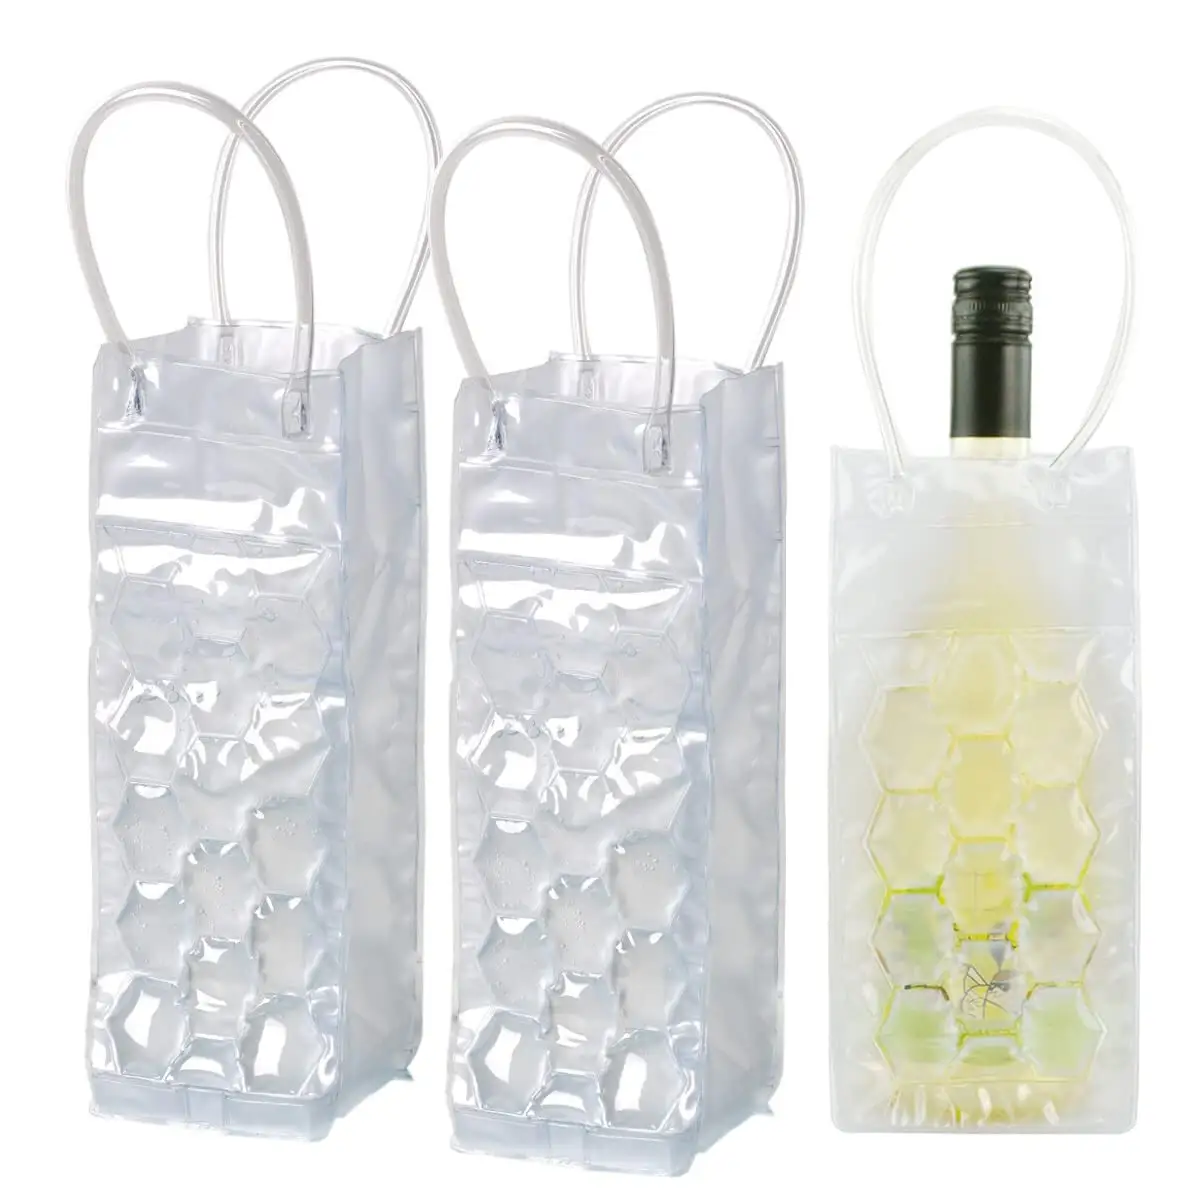 Custom Print Herbruikbare Clear Pvc Gel Wijn Bierfles Cool Gifts Draagtassen Picknick Koeler Handtassen Protector Tas Voor Reizen